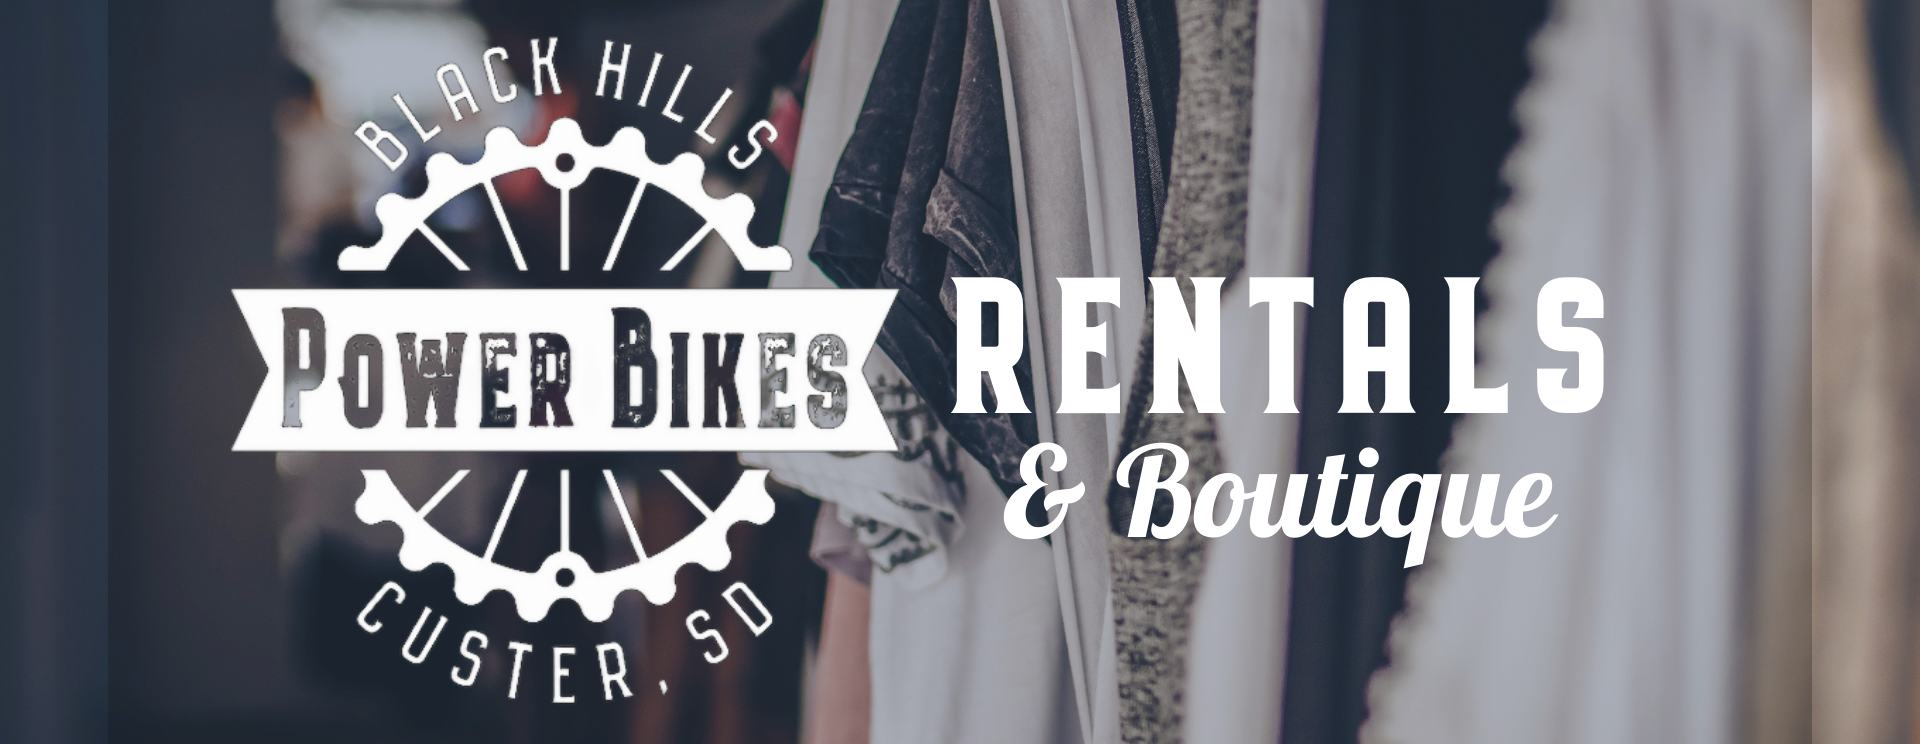 Black Hills Power Bikes, Rentals & Boutique